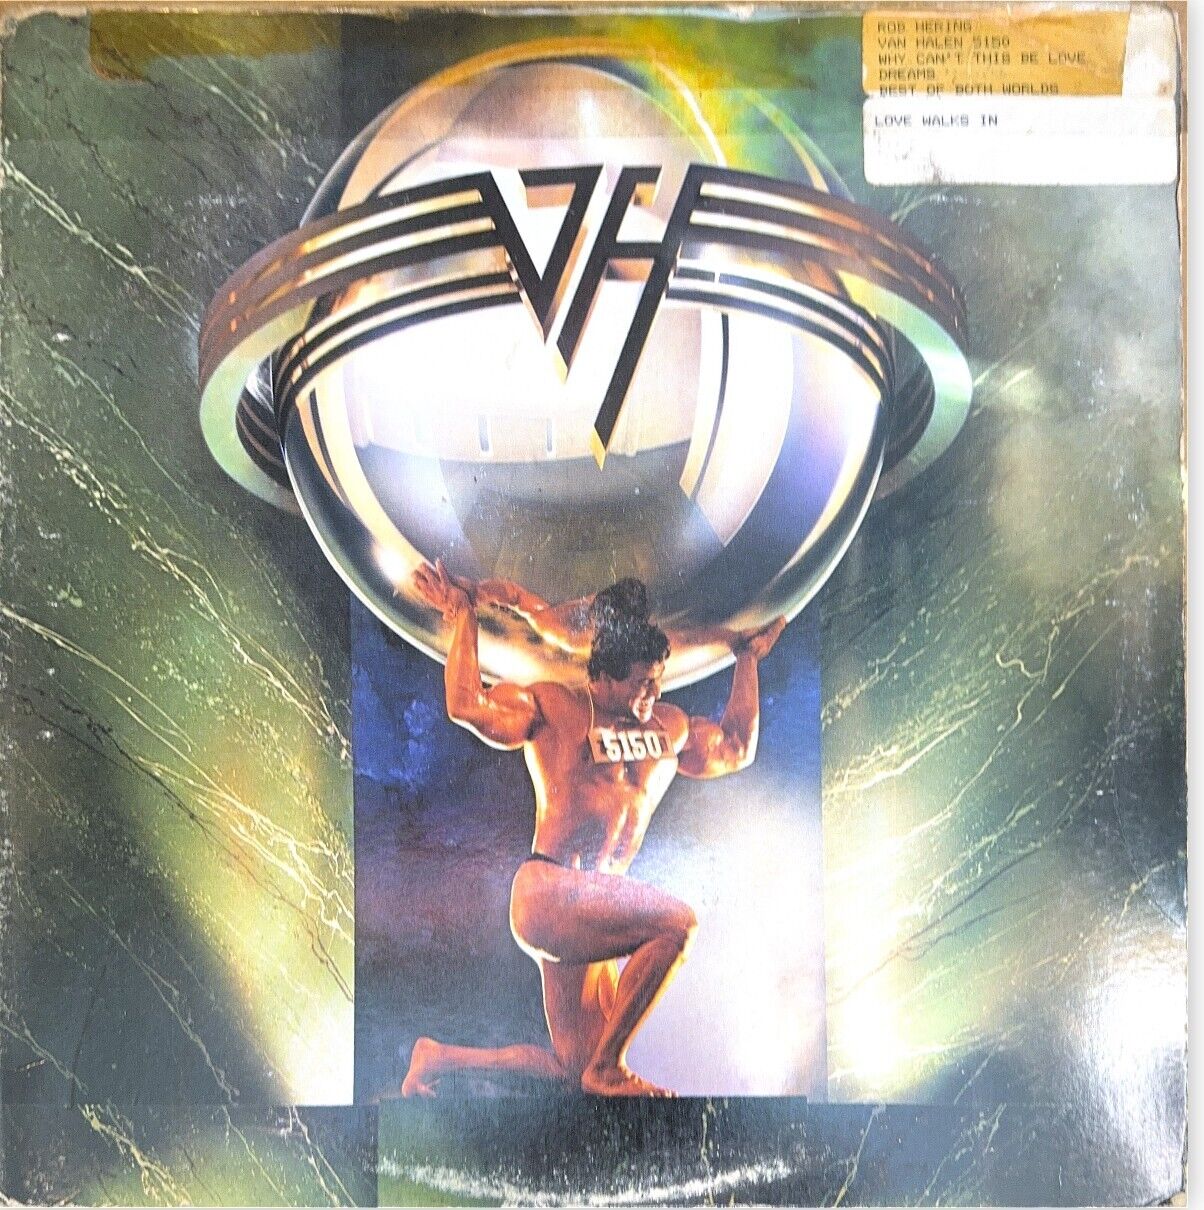 Van Halen - 5150 LP Vinyl  1986 Warner Bros. 1-25394 1st Pressing